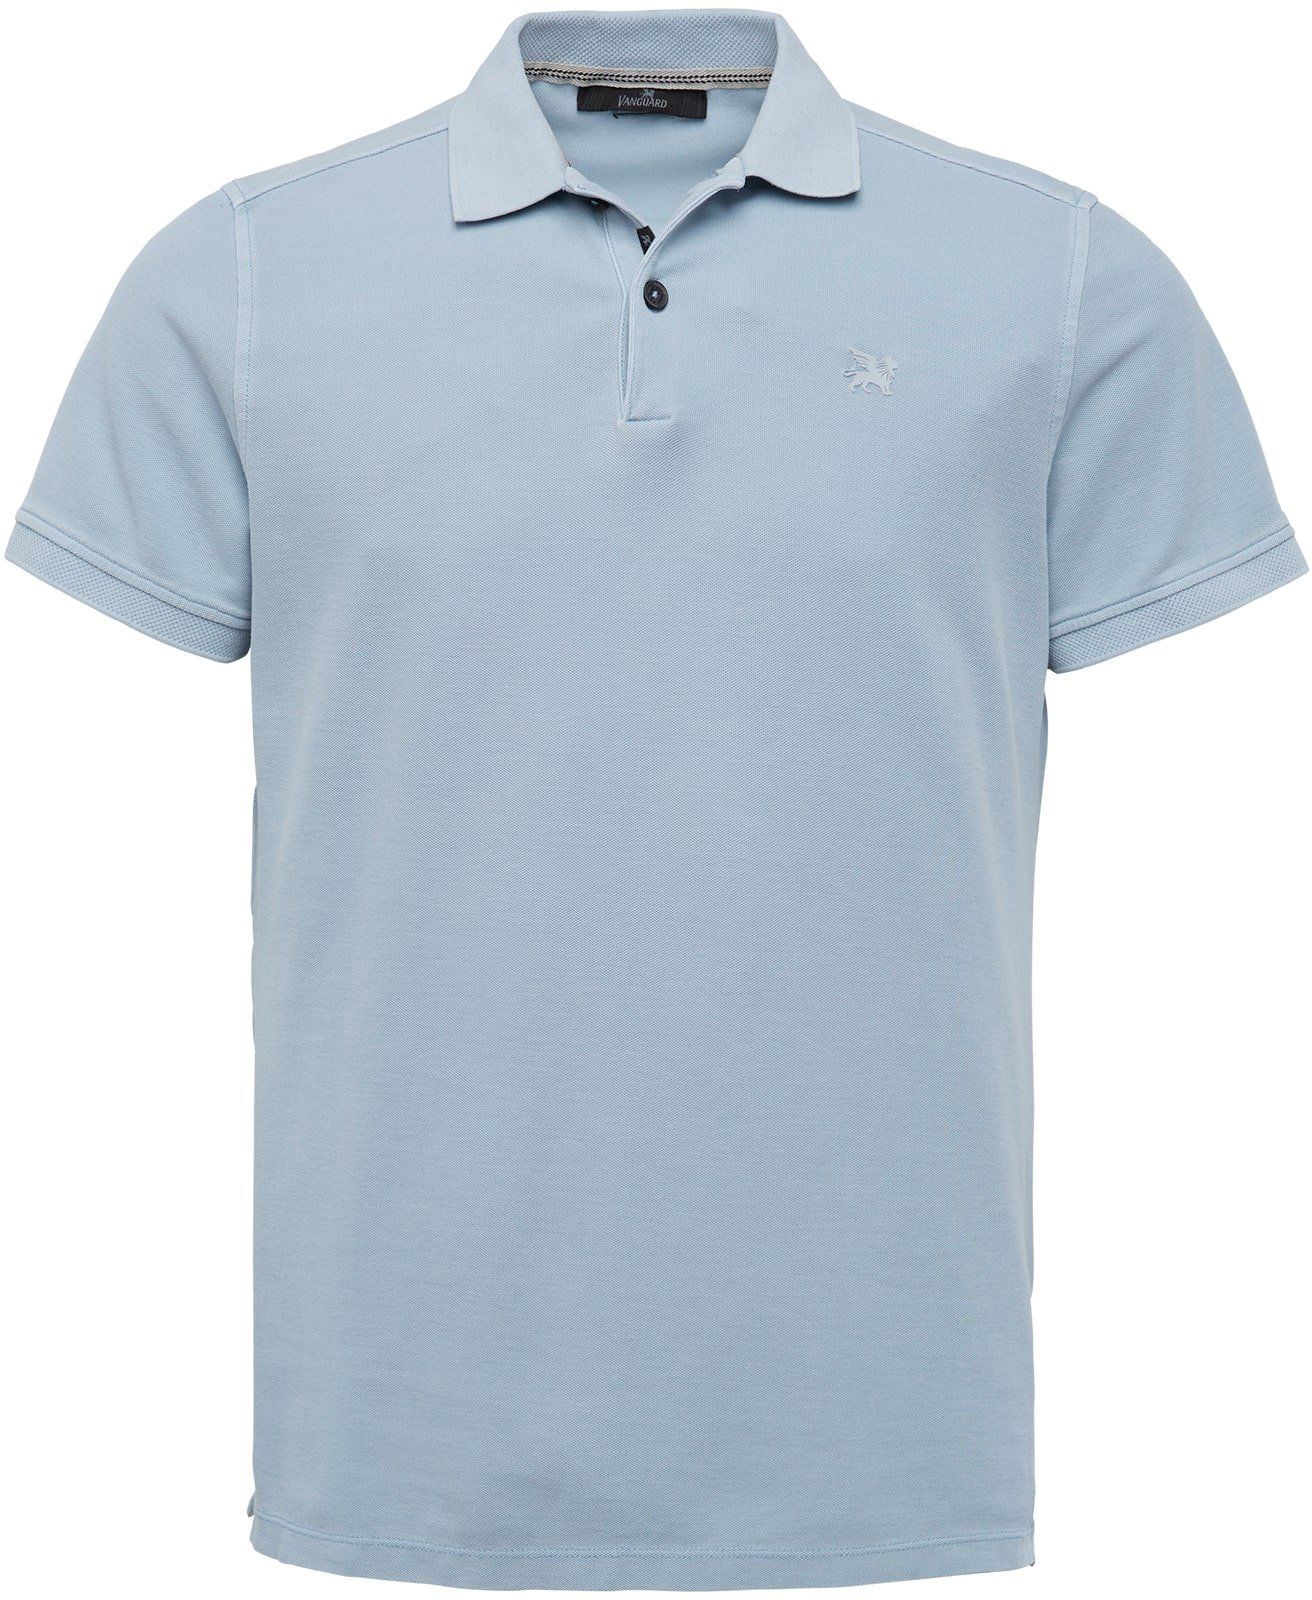 Vanguard Pique Polo Shirt Blue size L